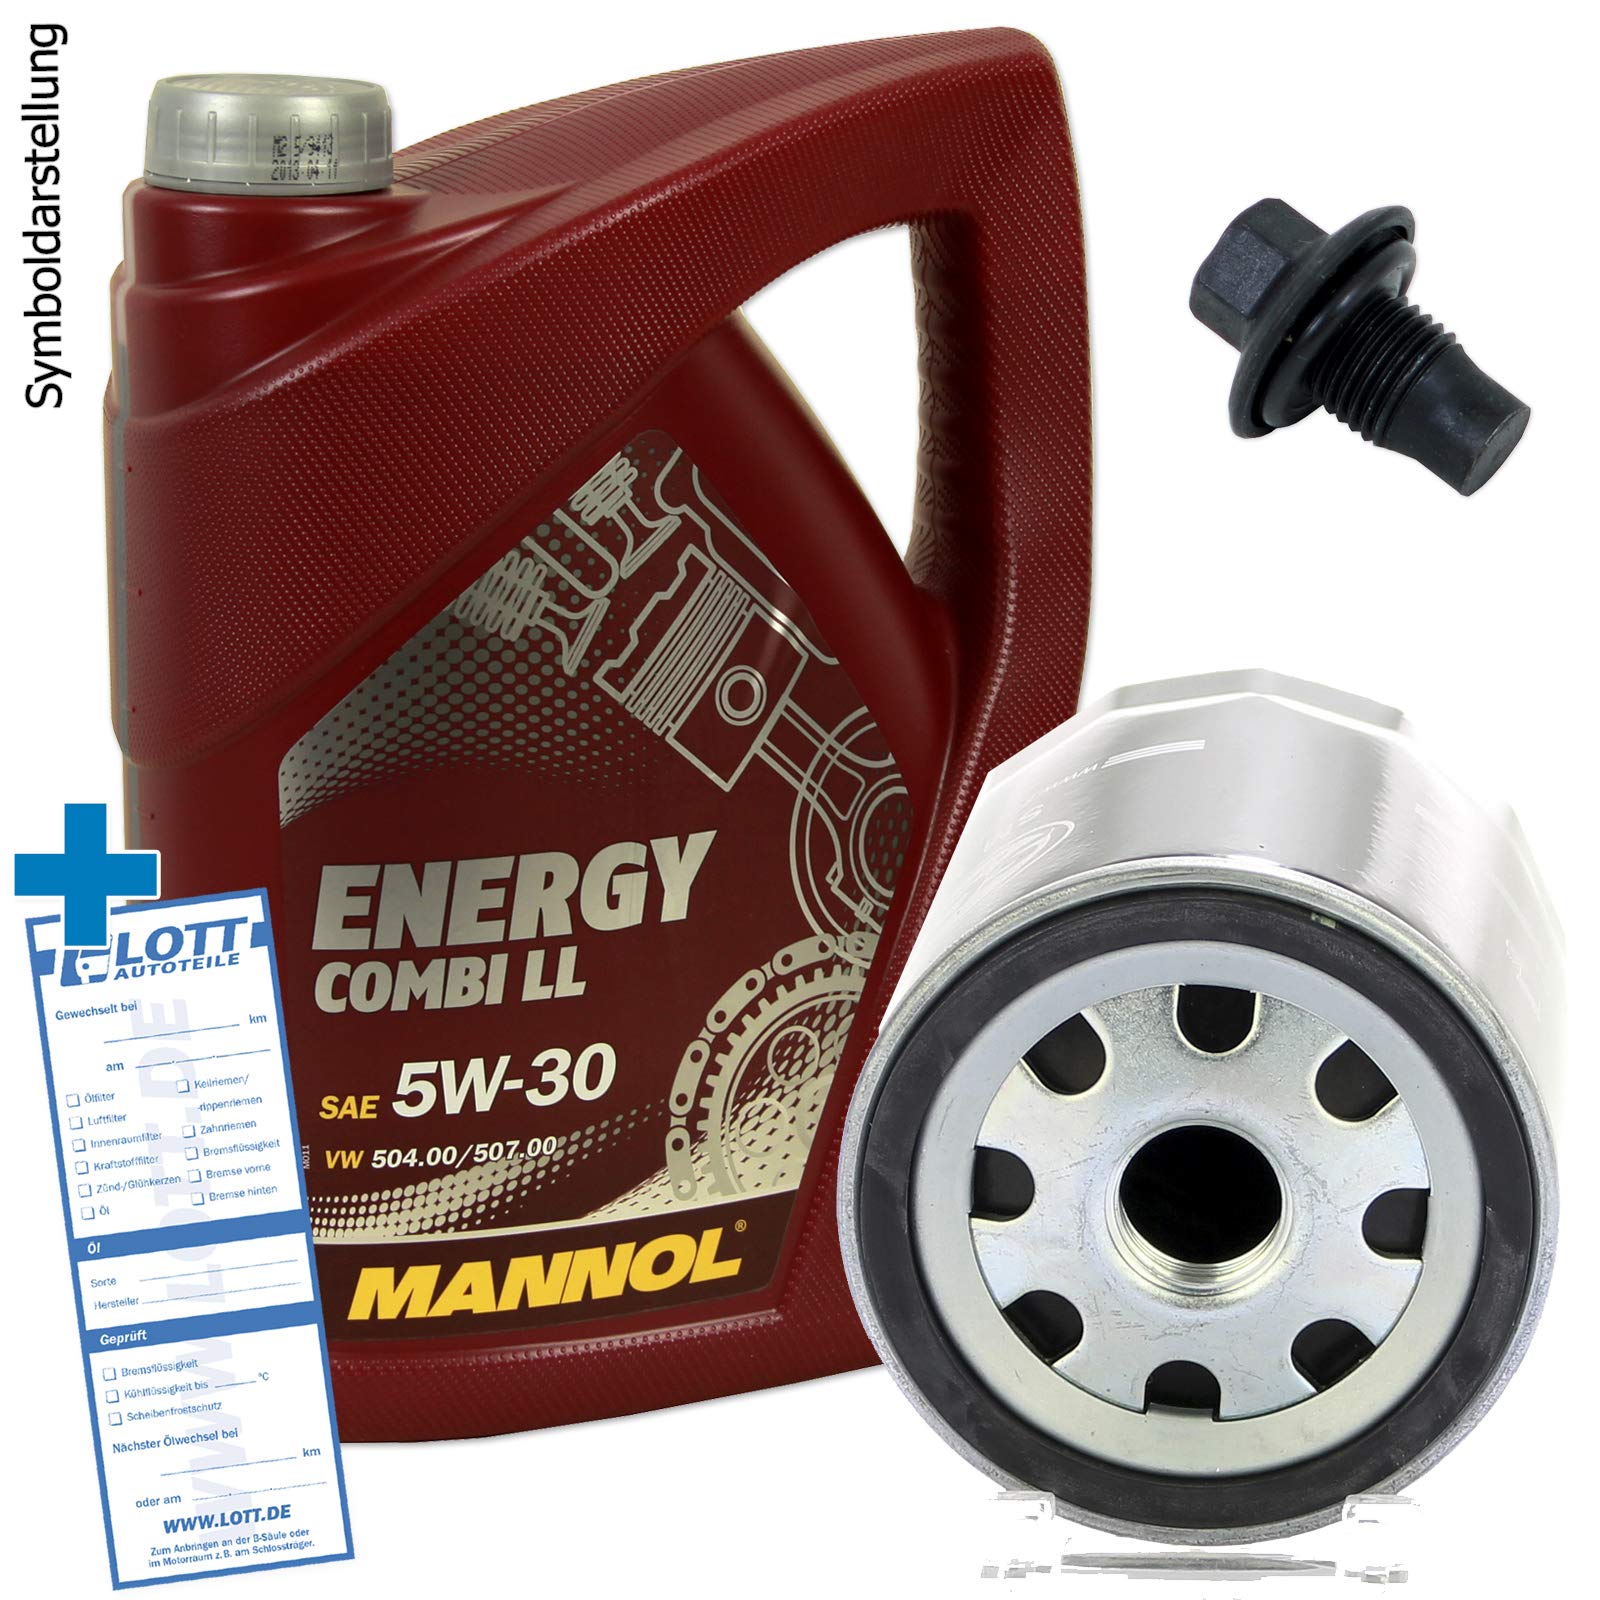 Ölwechsel Set Inspektion 5 Liter Mannol Energy Combi LL 5W-30 Motoröl + Ölfilter + Öl Ablassschraube Verschlussschraube von Lott-Autoteile